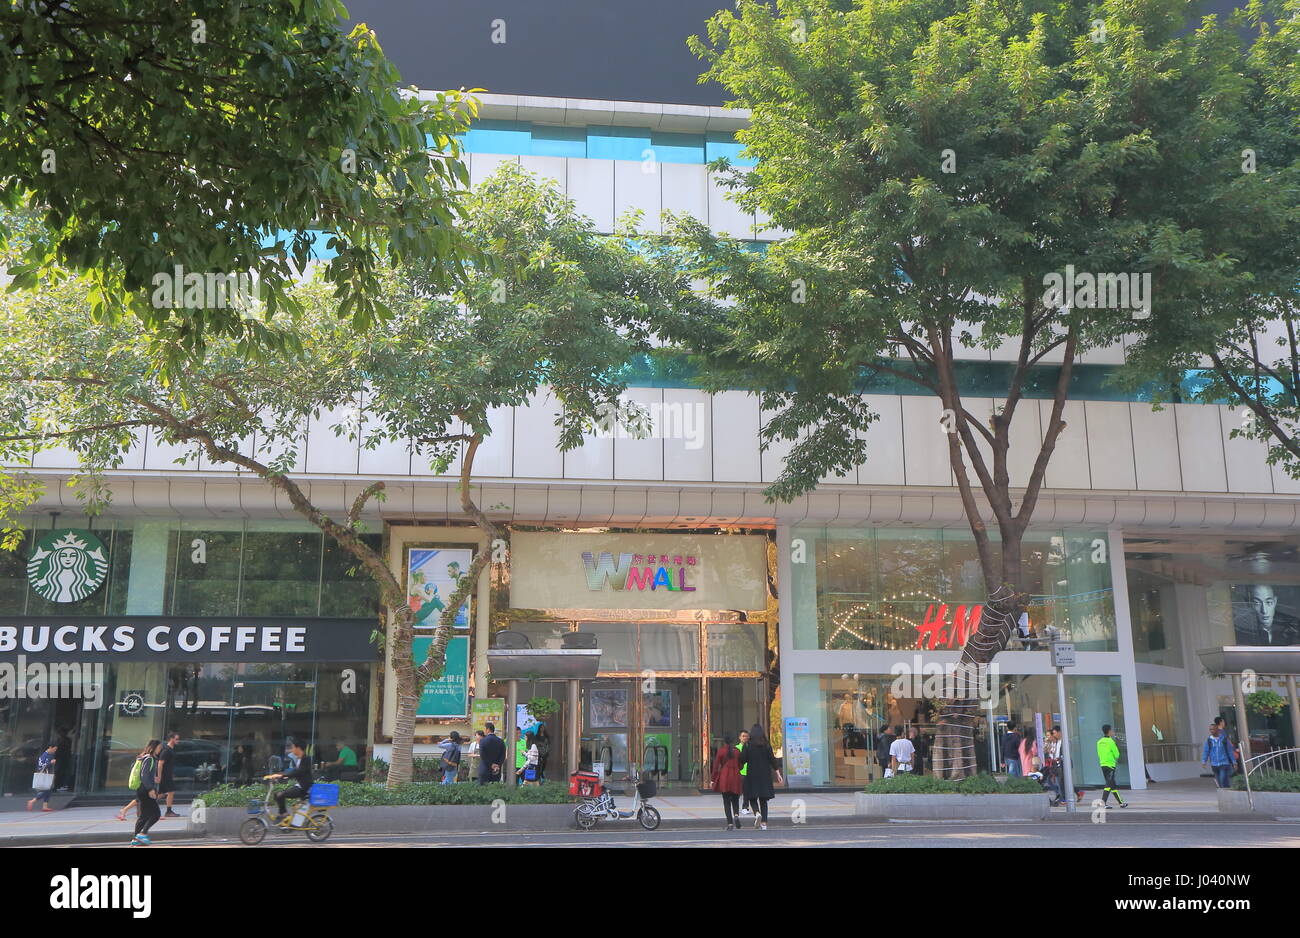 Personnes visitent Wmall. Wmall est un centre commercial au centre-ville de Guangzhou en Chine. Banque D'Images